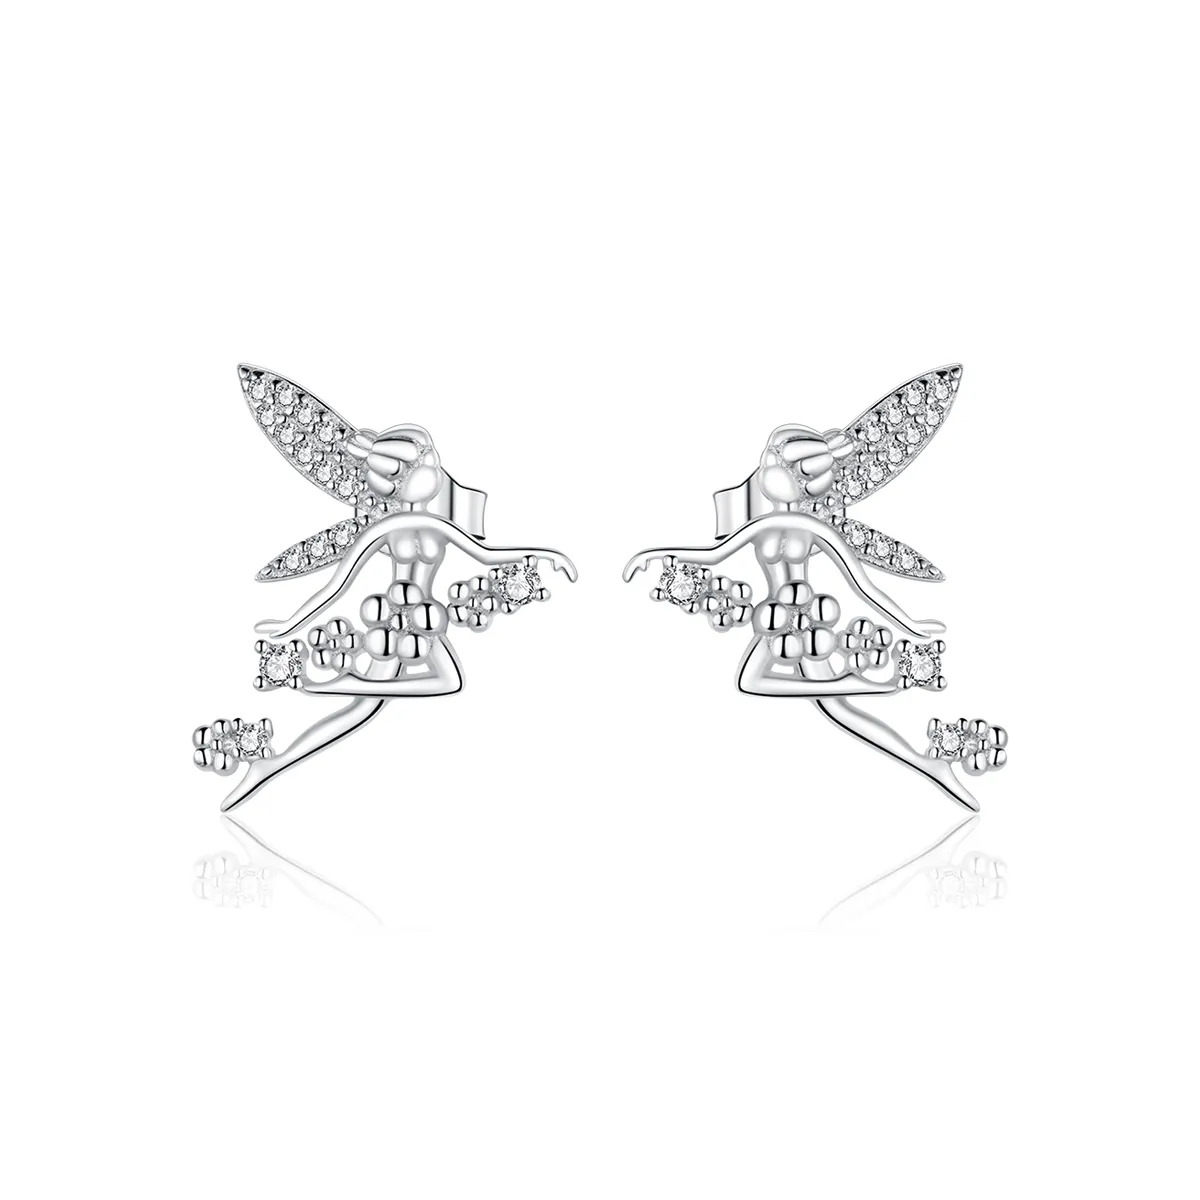 Studuri de urechi în stil Pandora cu motive florale elfice - BSE341